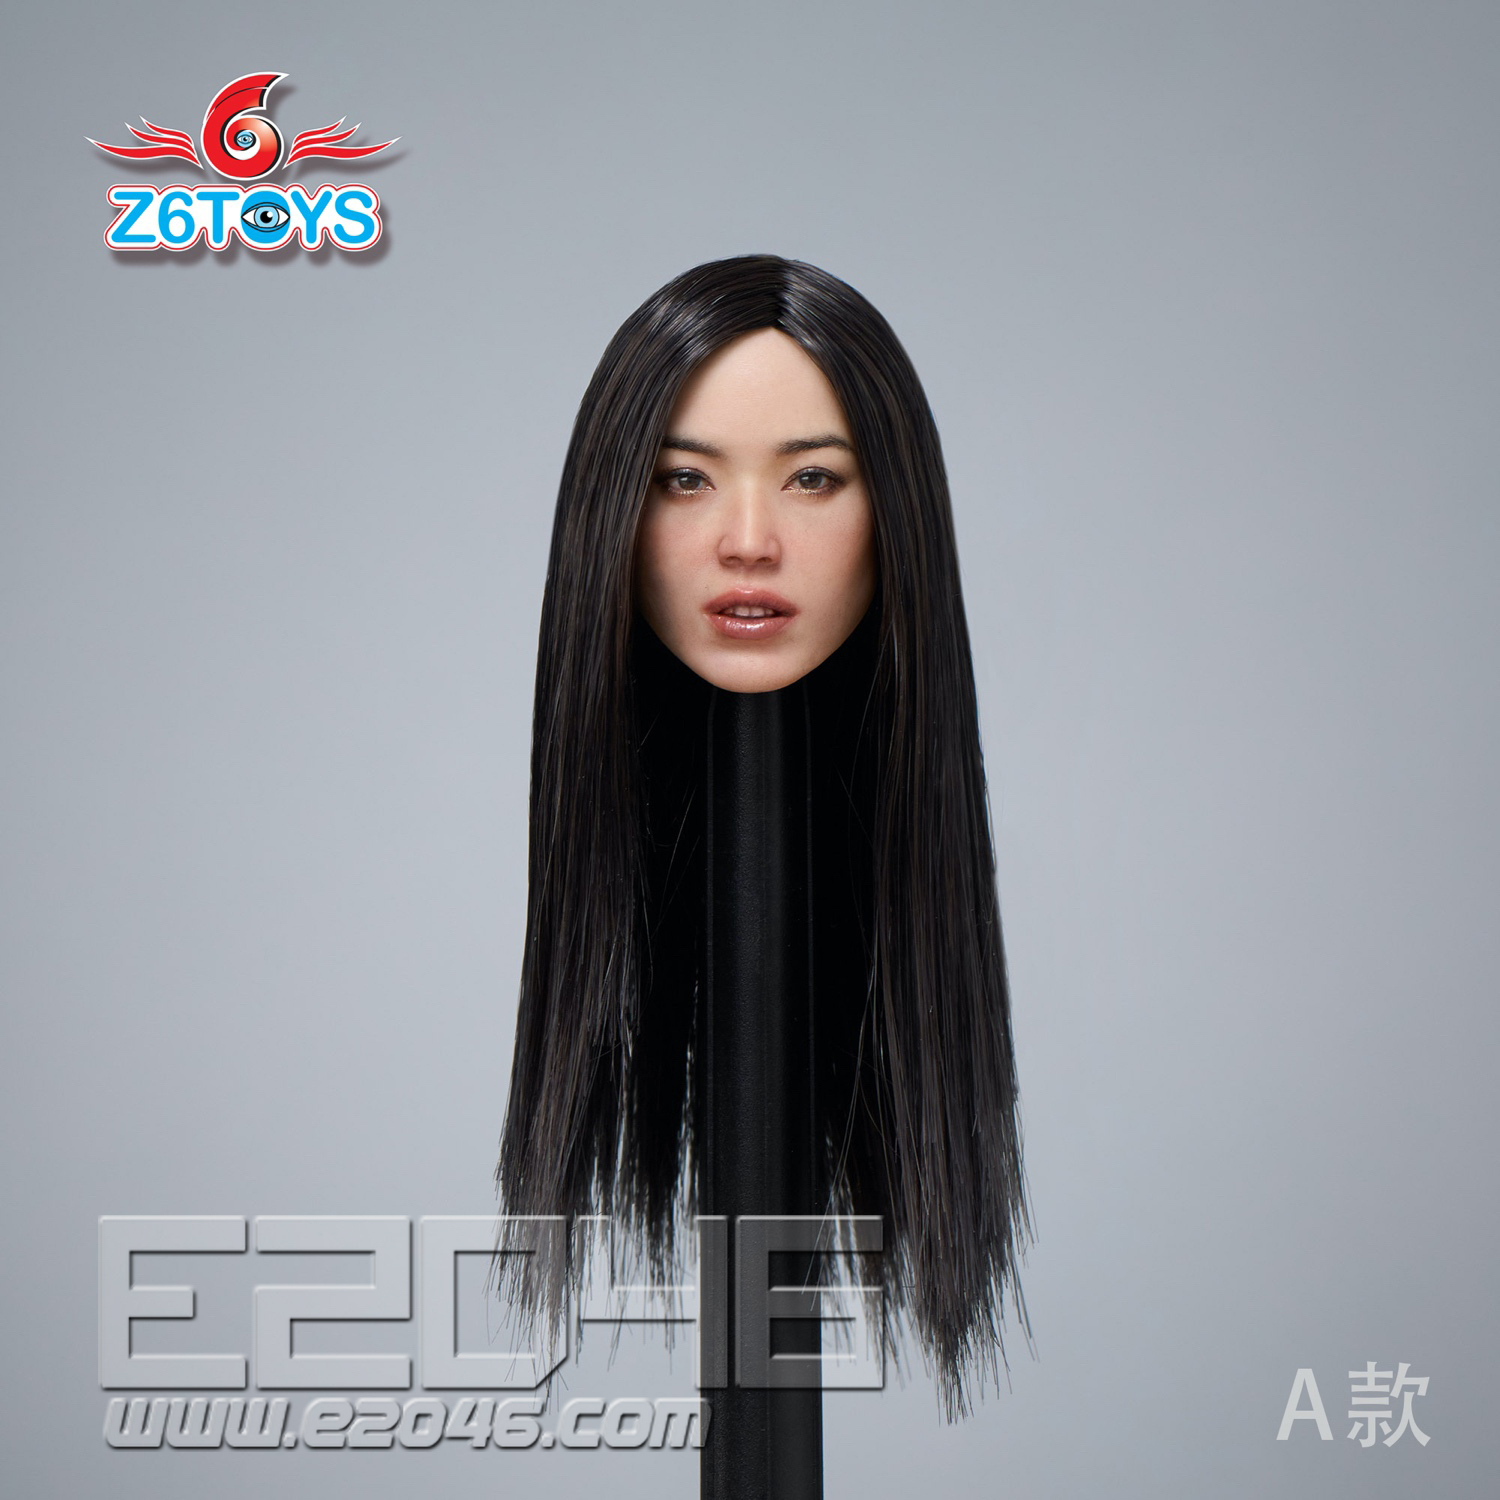 Asian Beauty Head Sculpture A (DOLL)